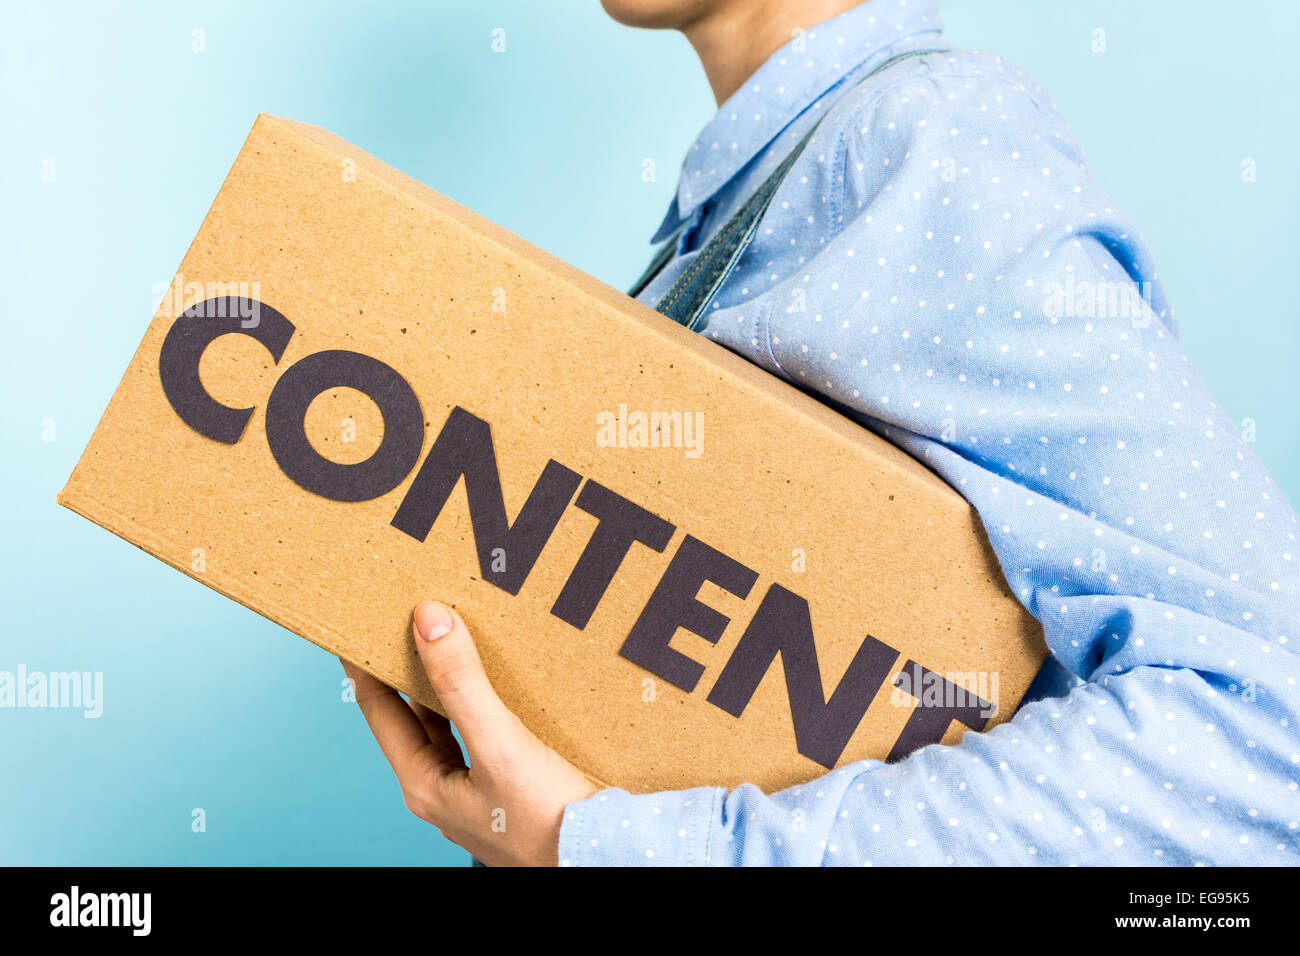 Concept de marketing de contenu. Femme portant une boîte avec le mot "contenu" à l'avant. Banque D'Images